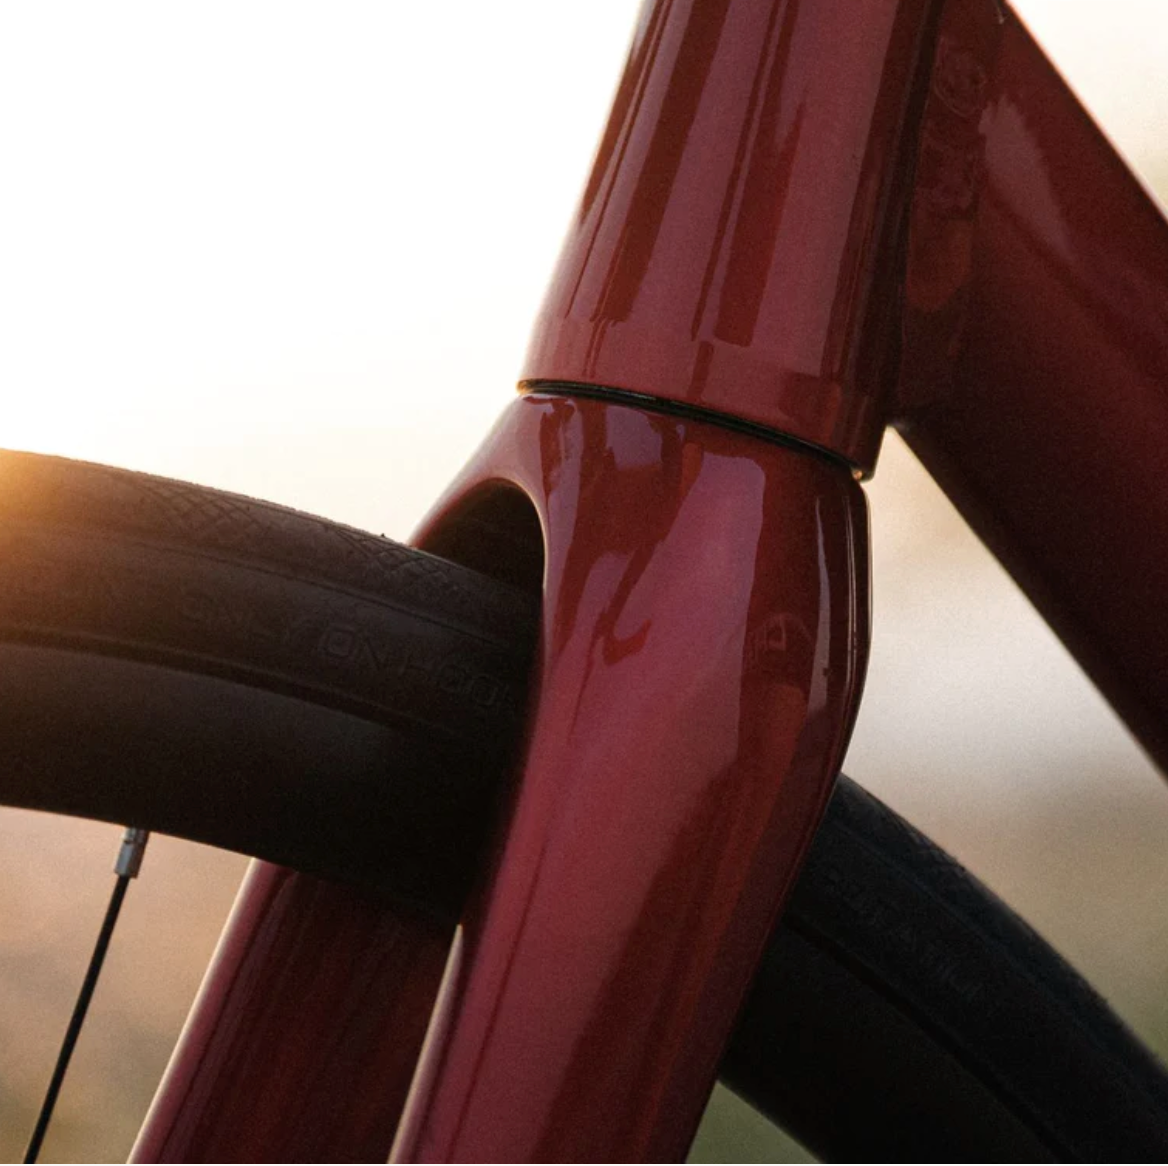 Fuji SL-A Disc 1.3 Road Bike Metallic Red